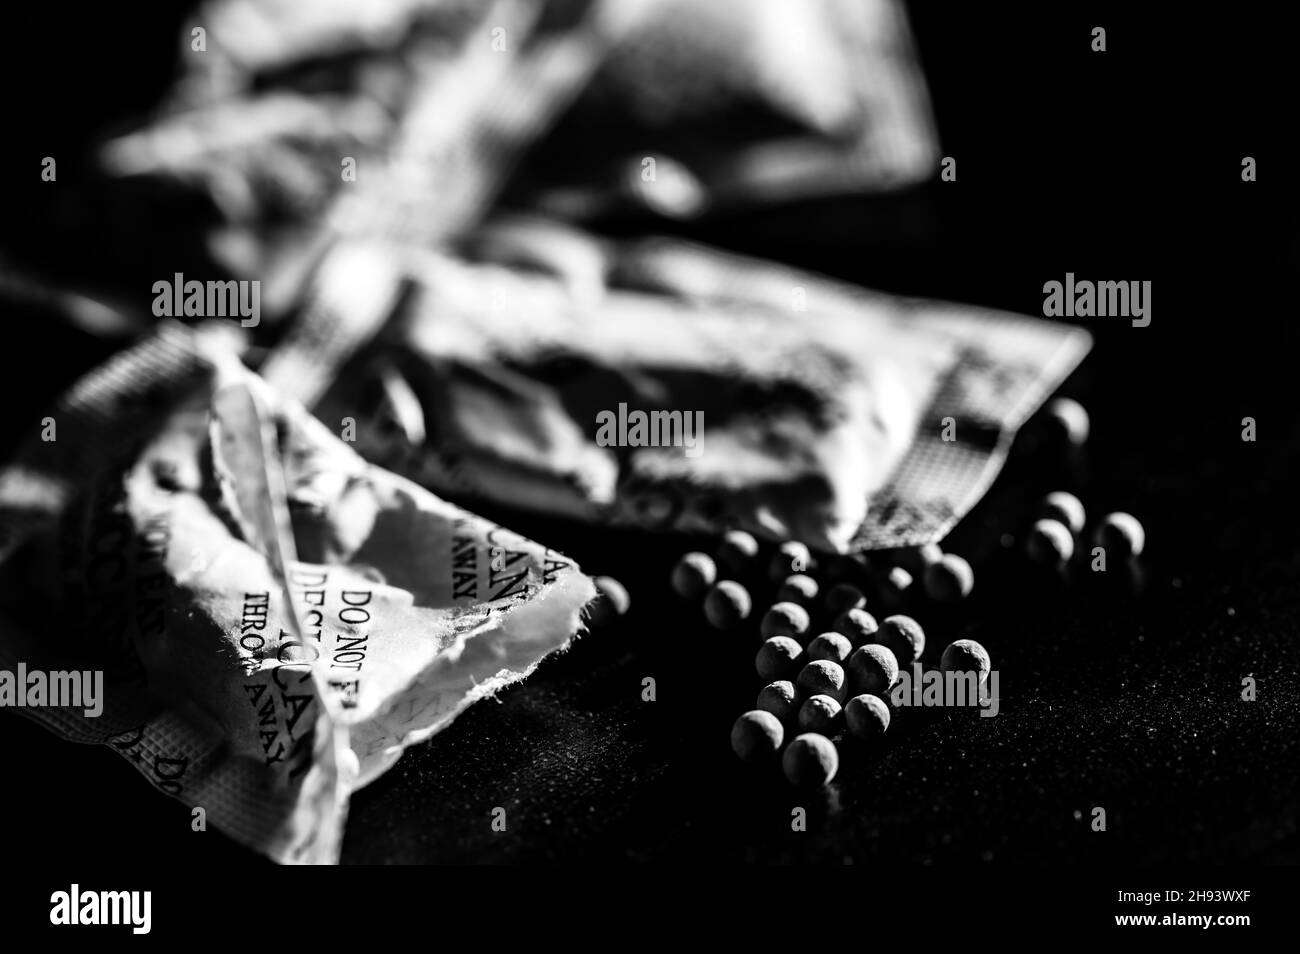 sachets de dessiccant dispersés sur une surface sombre Banque D'Images